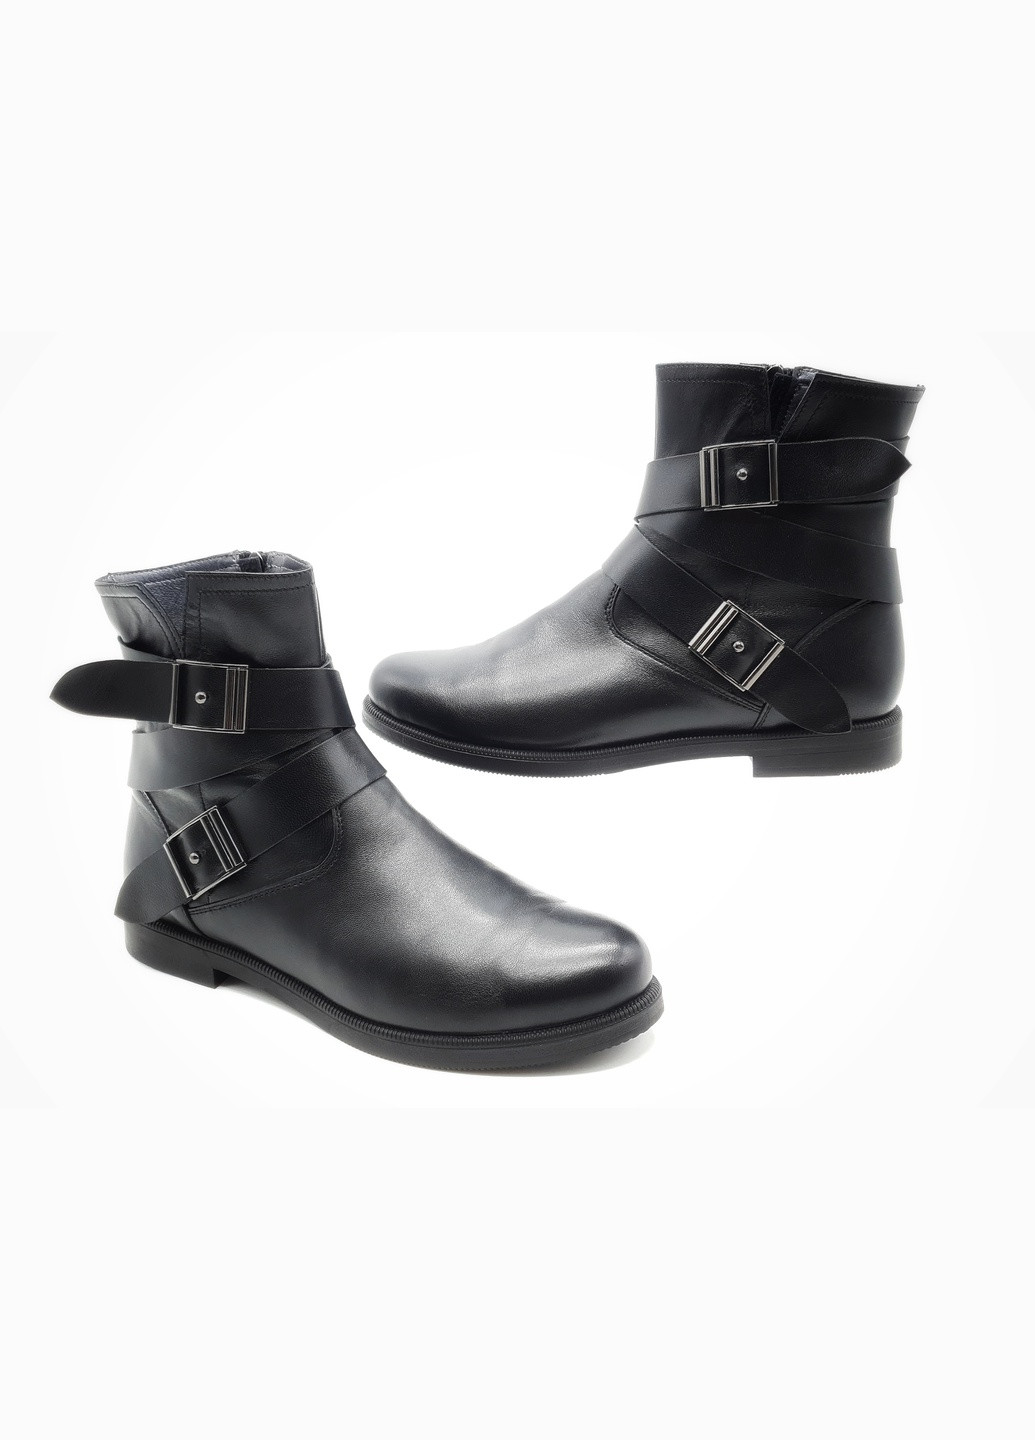 Осенние женские ботинки черные кожаные fs-17-23 27 см (р) Foot Step